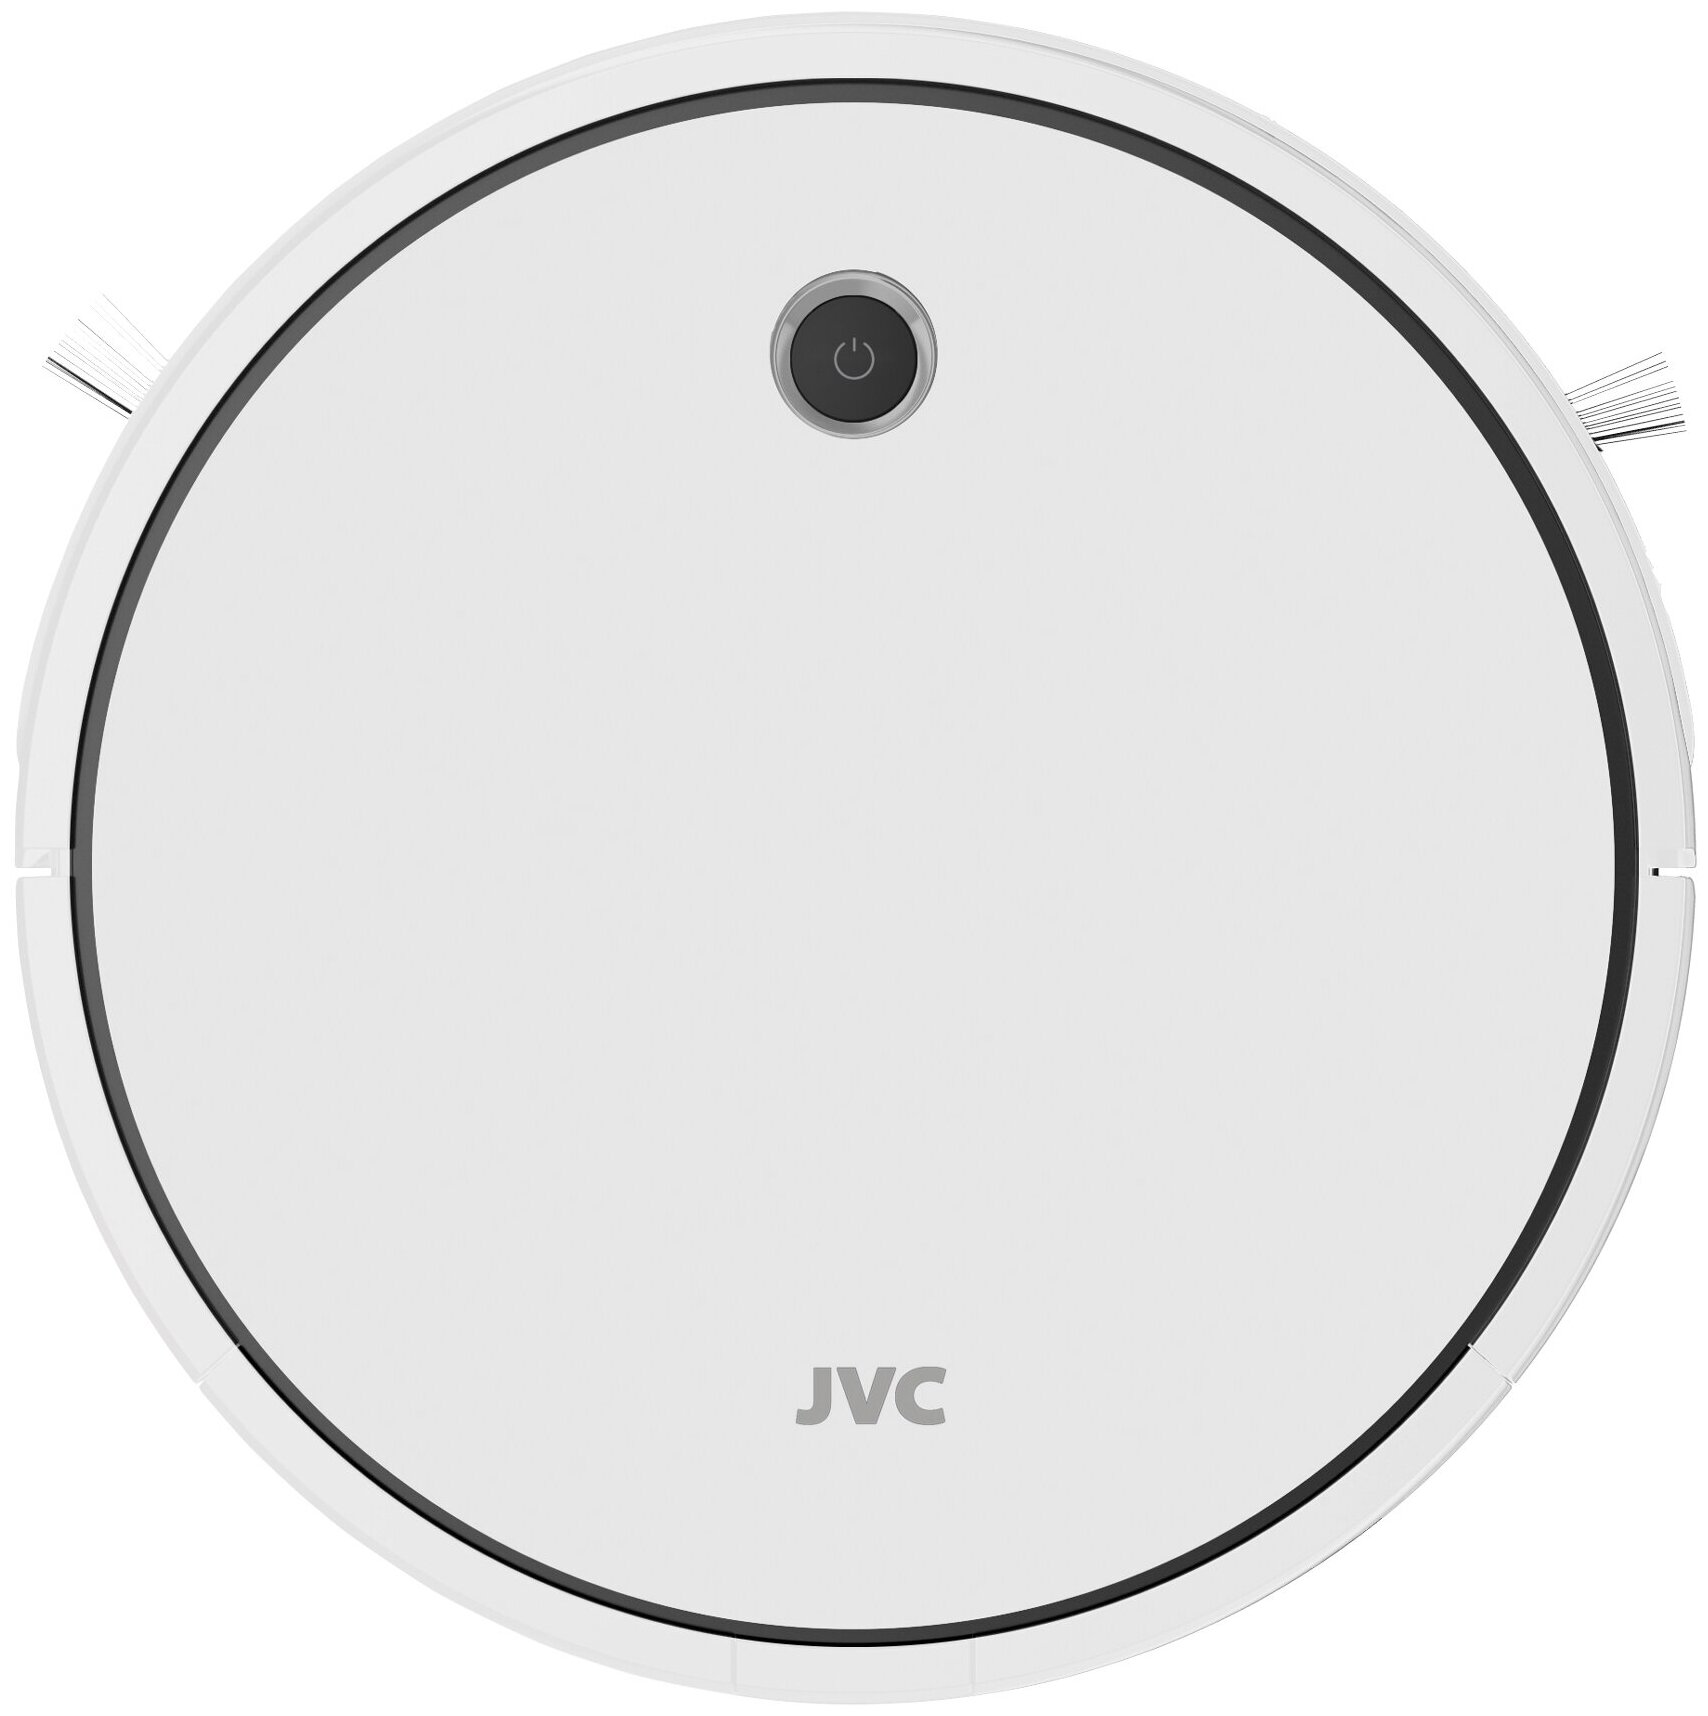 Робот - пылесос JVC 2 в 1 сухая и влажная уборка 4 режима турбо щетка HEPA фильтр голосовой помощник смартфон-управление Smart life Wi-Fi